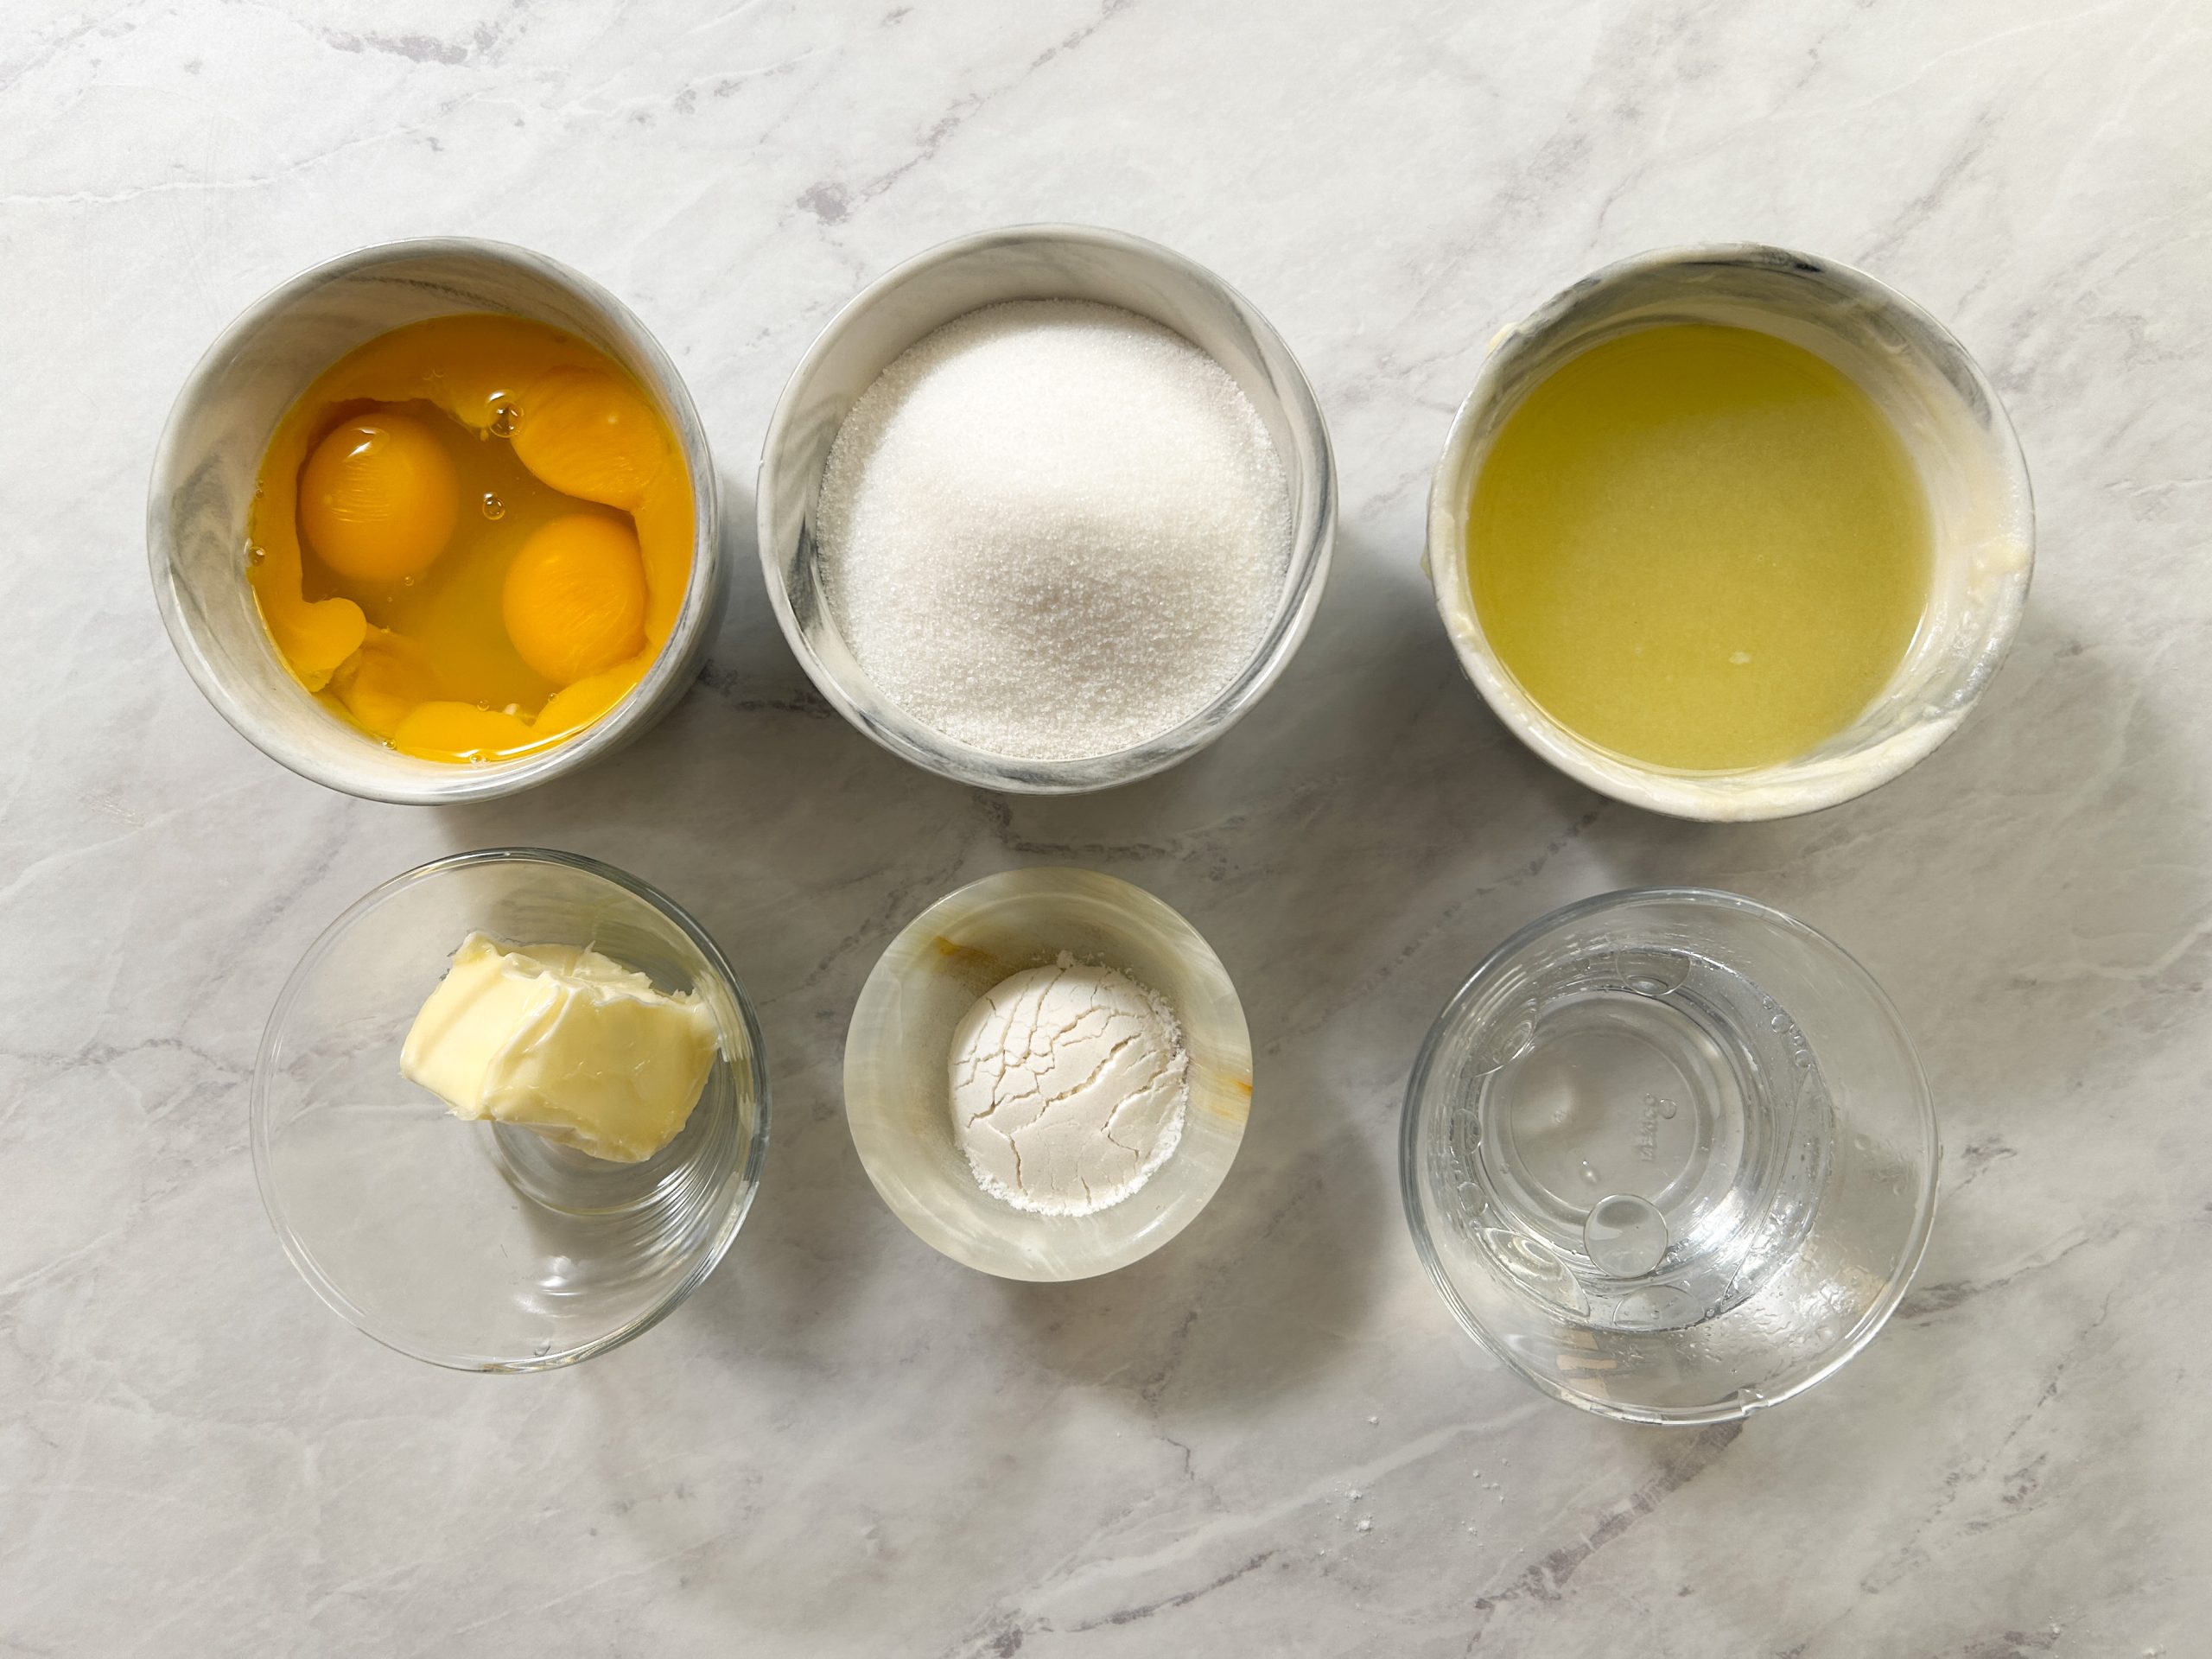 lemon curd ingredients: lemons, eggs, sugar, water, butter